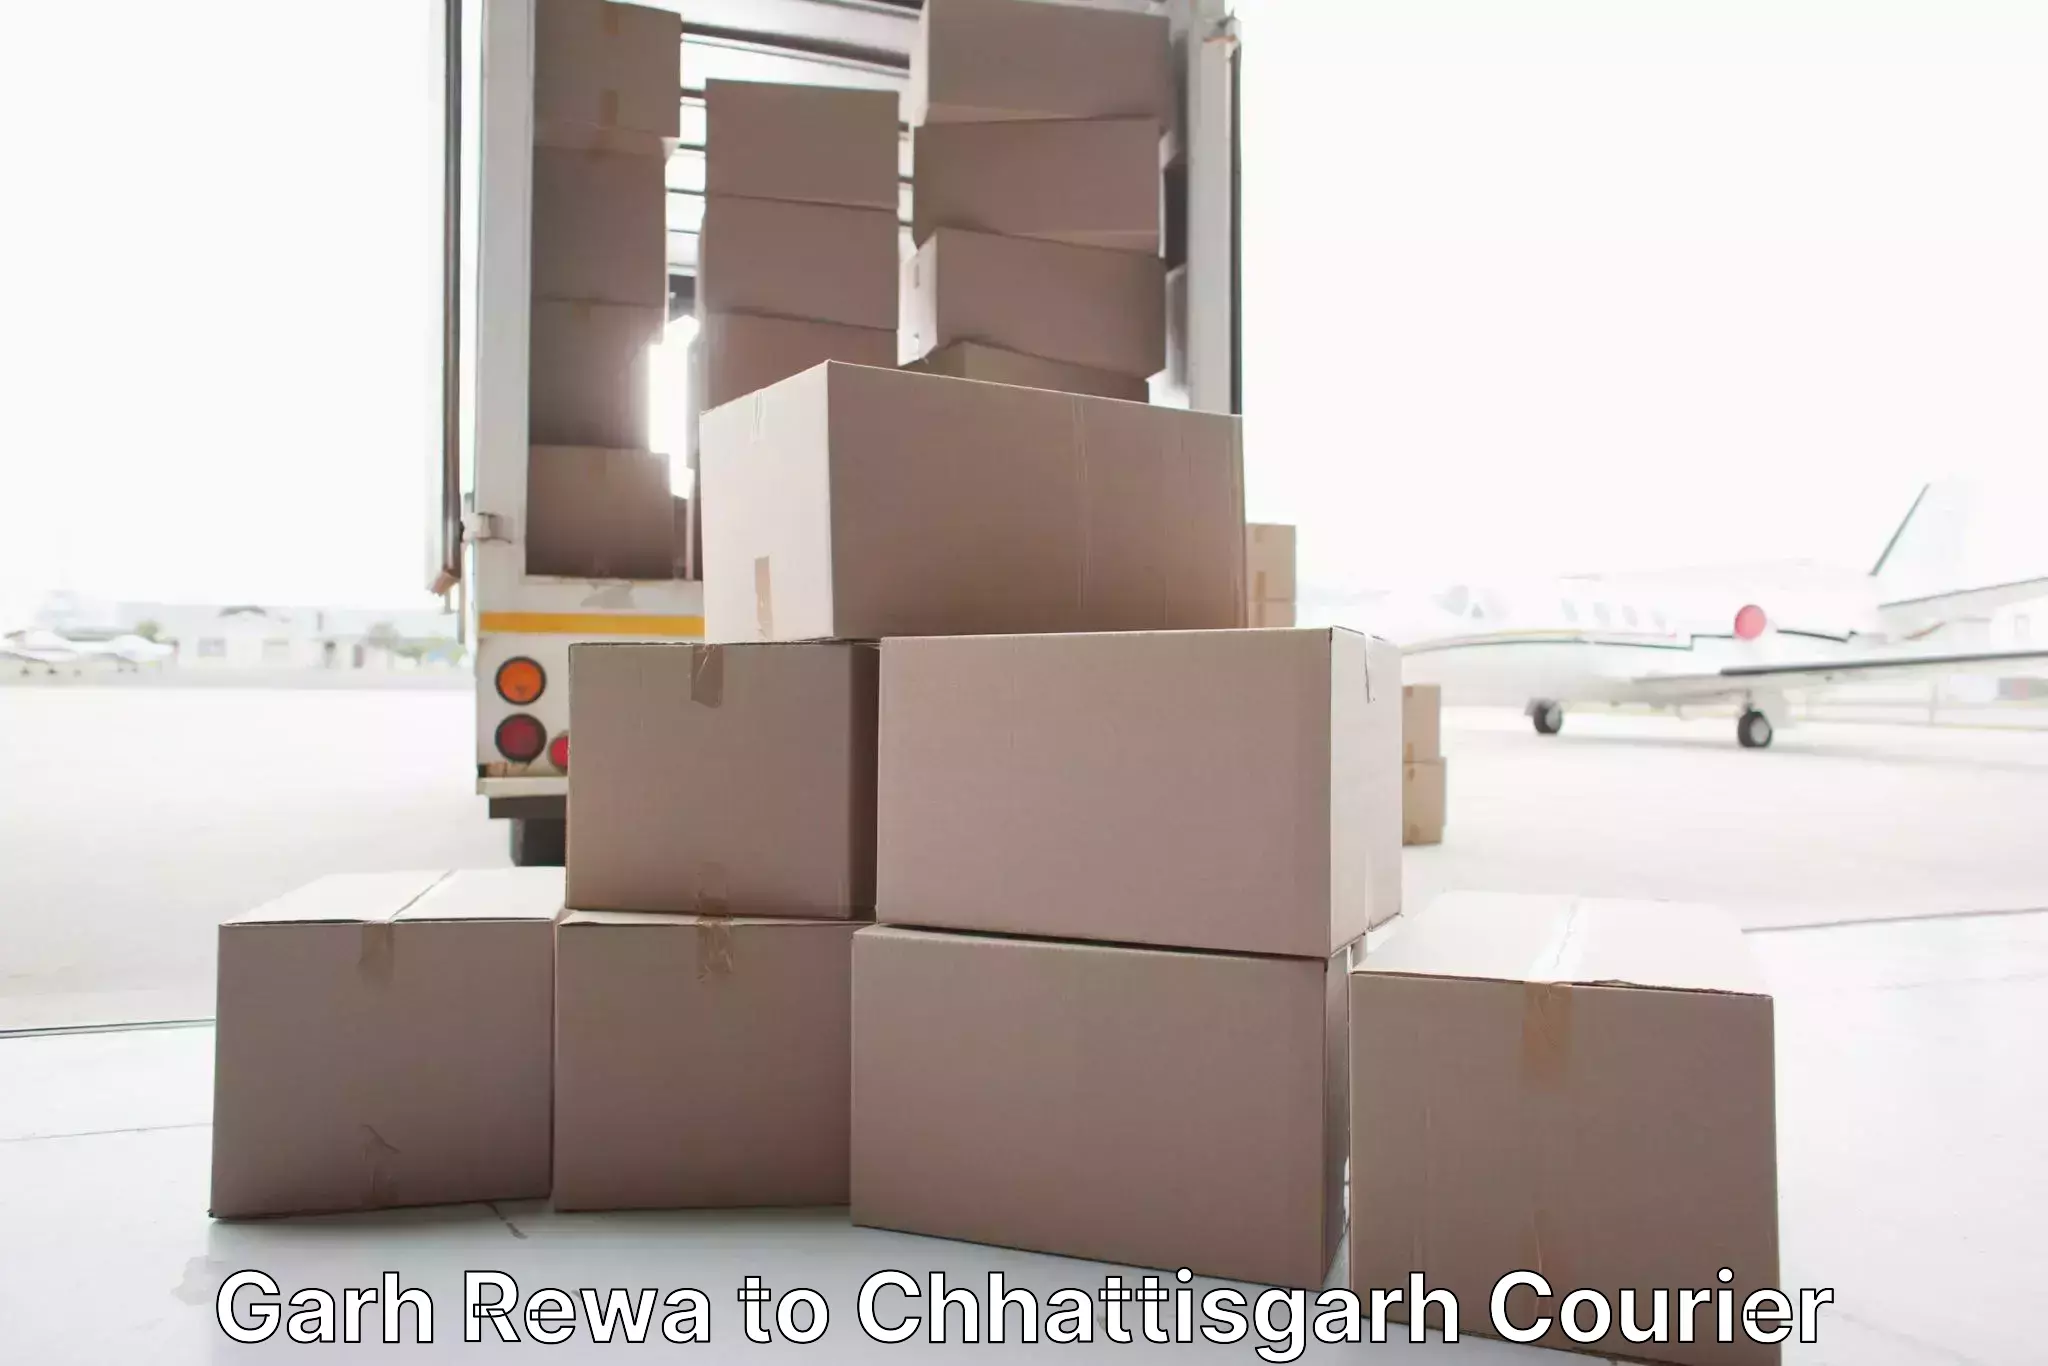 Furniture delivery service in Garh Rewa to Surguja